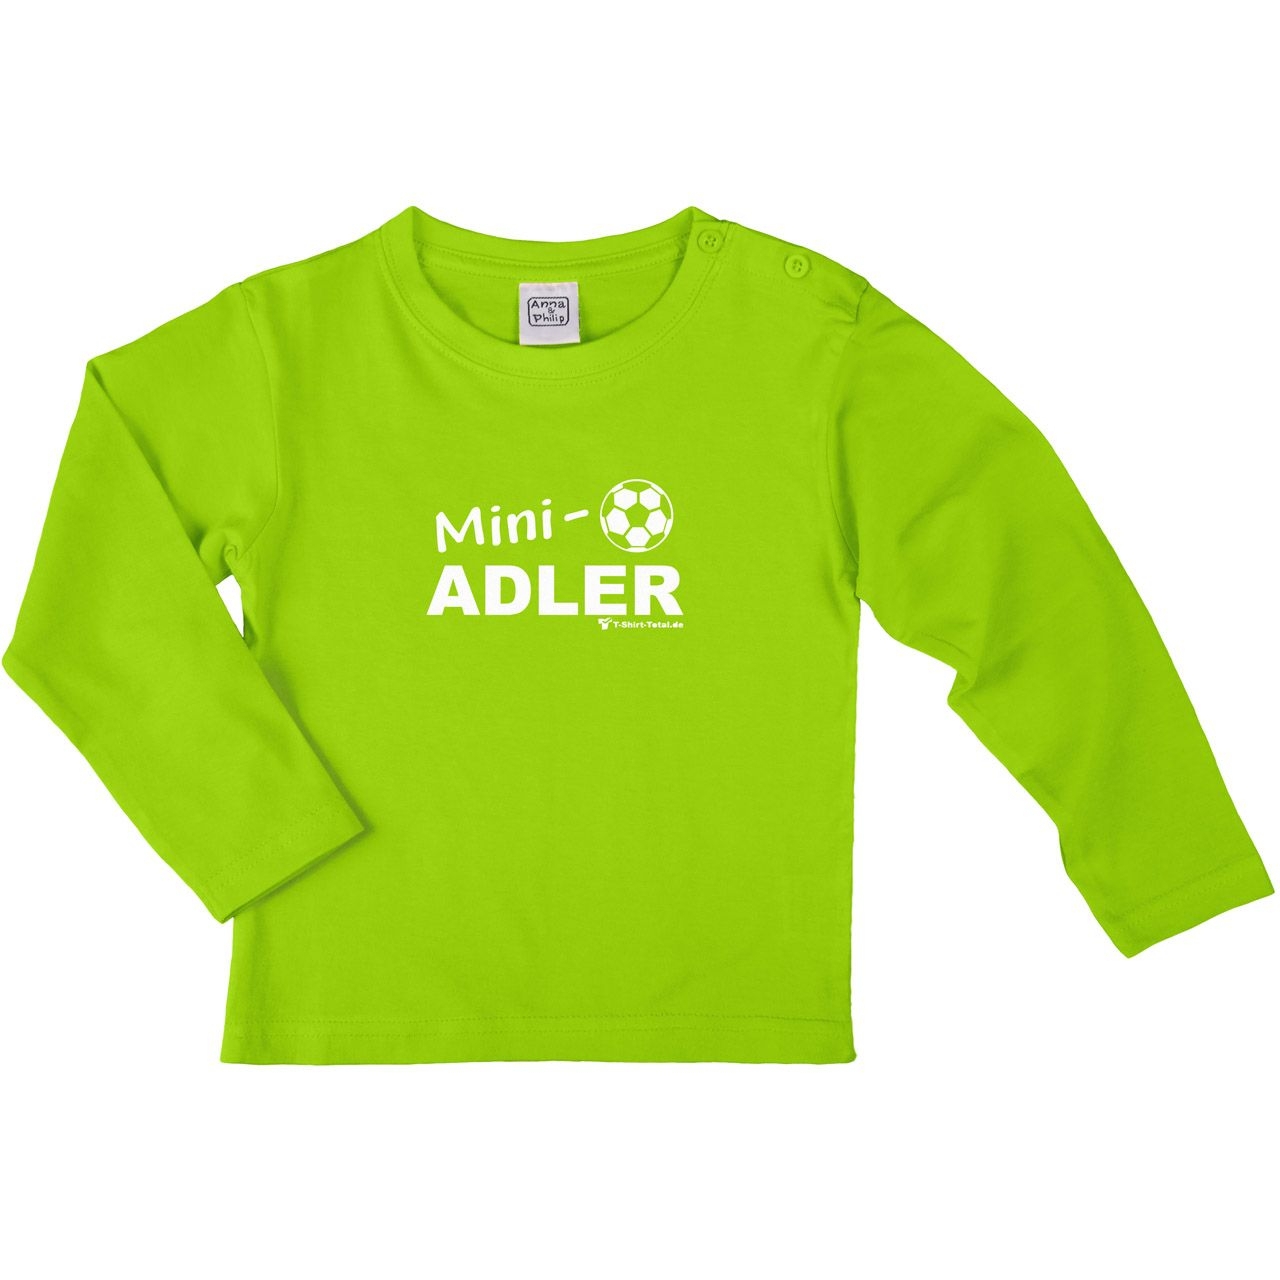 Mini Adler Kinder Langarm Shirt hellgrün 122 / 128